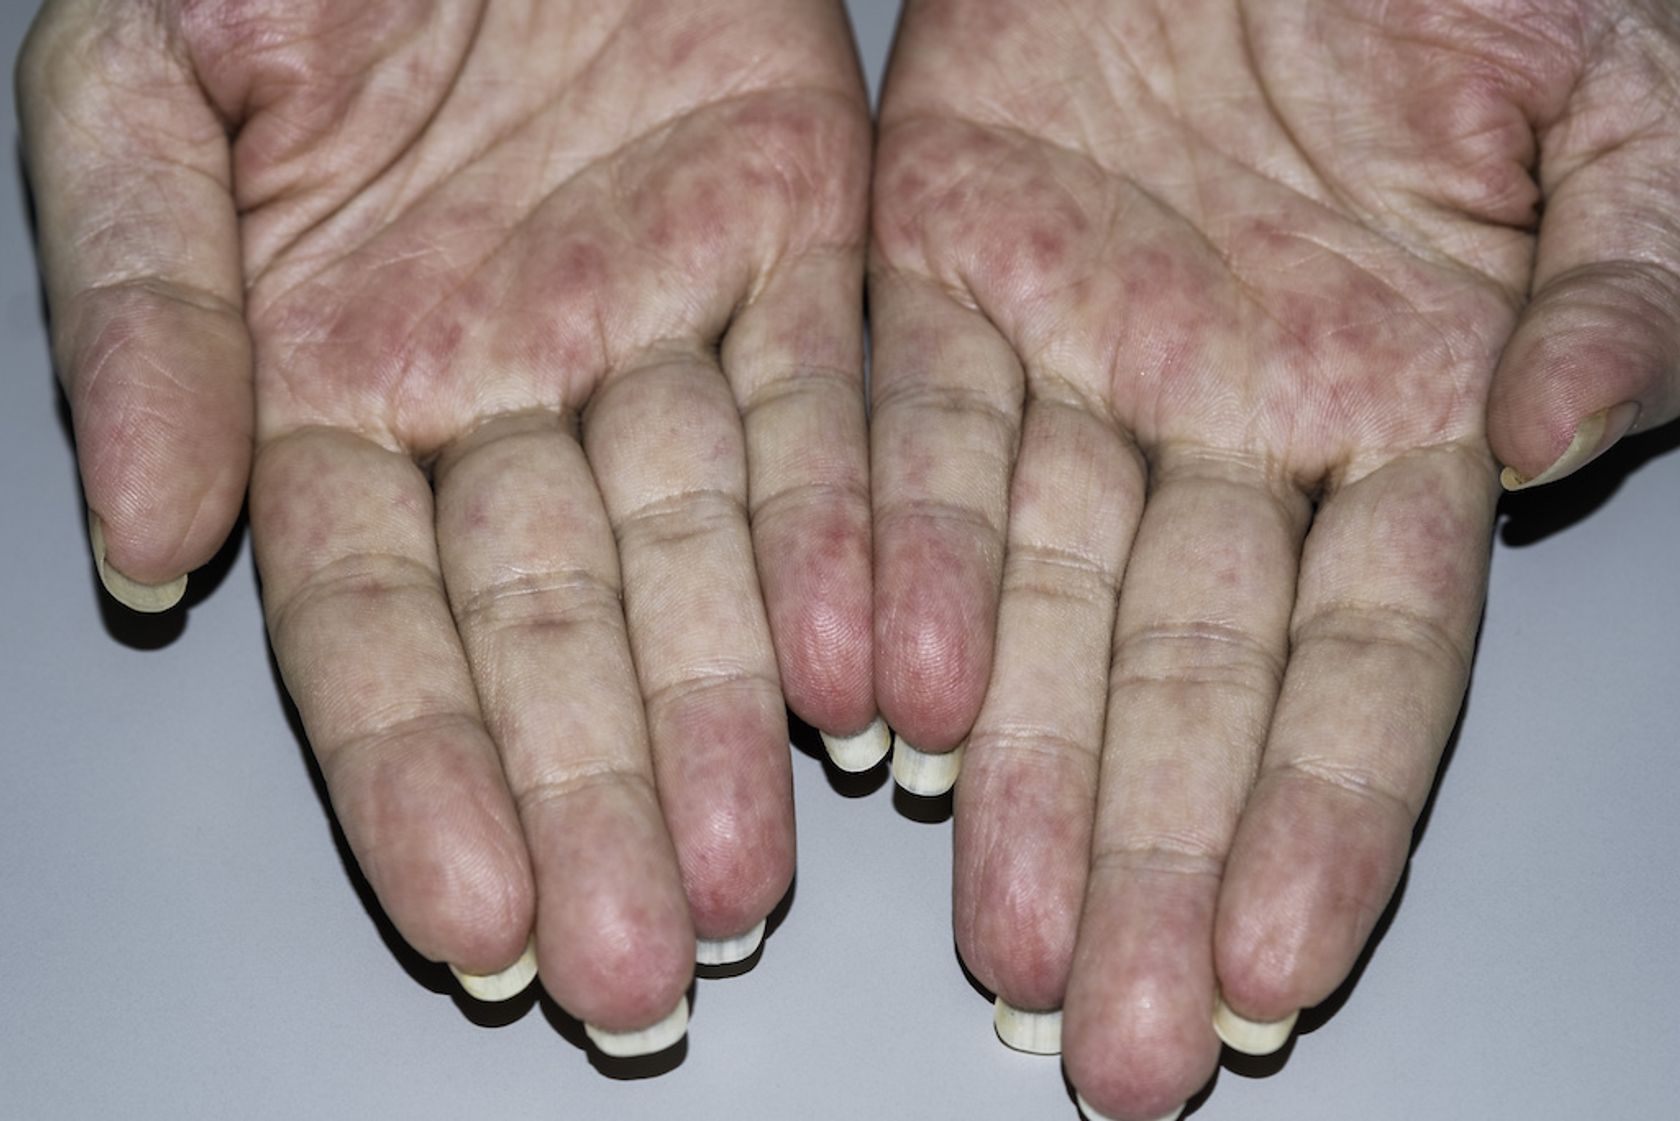 Vergiftung zeigt sich an unterschiedlicher Färbung der Hände und Finger